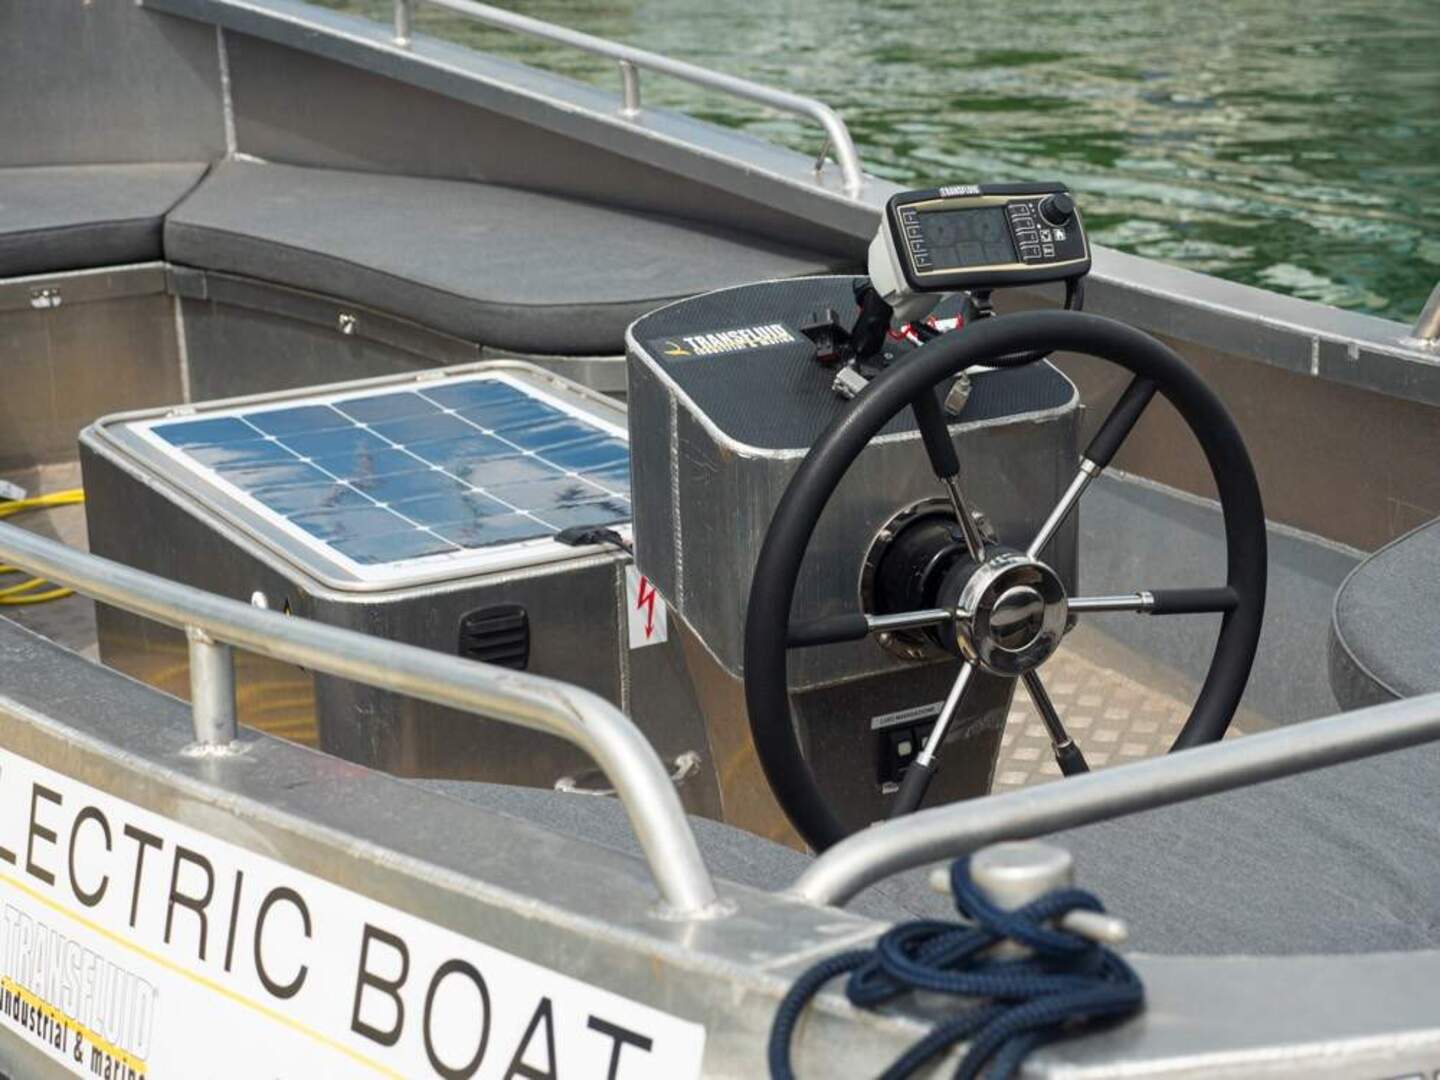 L’Electric Boat Show torna nella nuova location di Laveno Mombello sul lago Maggiore